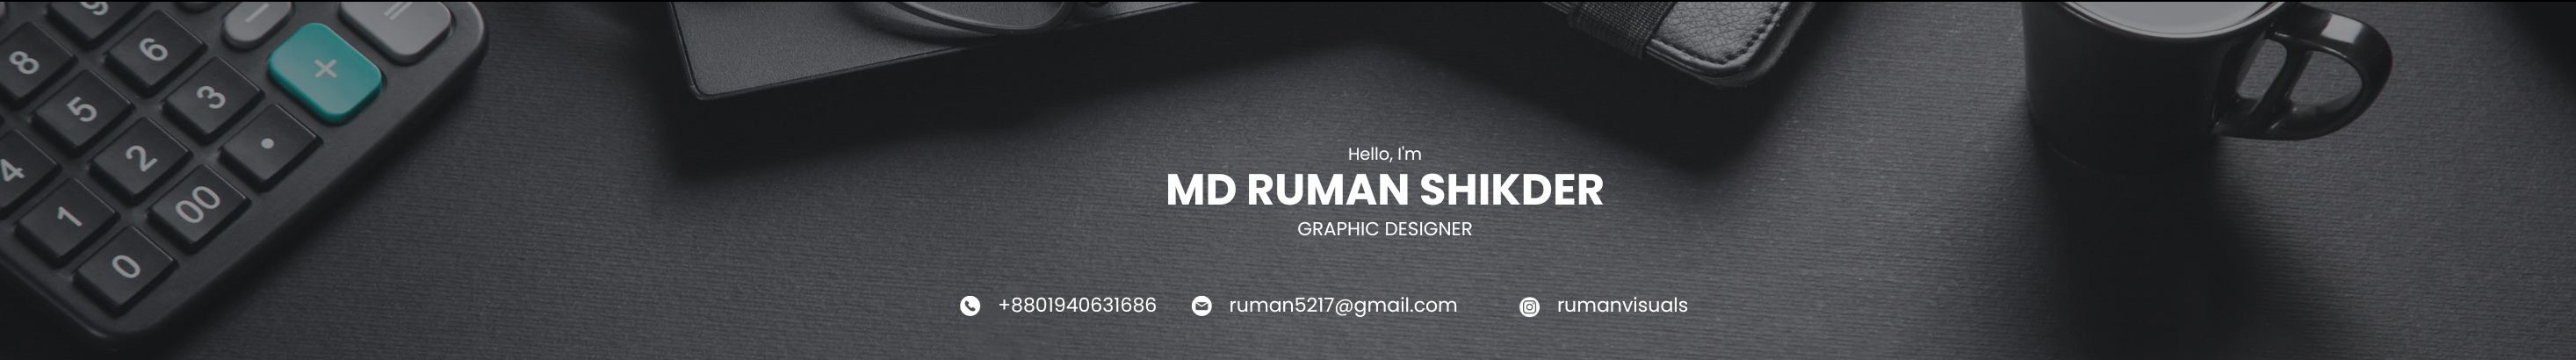 MD RUMAN SHIKDER's profile banner